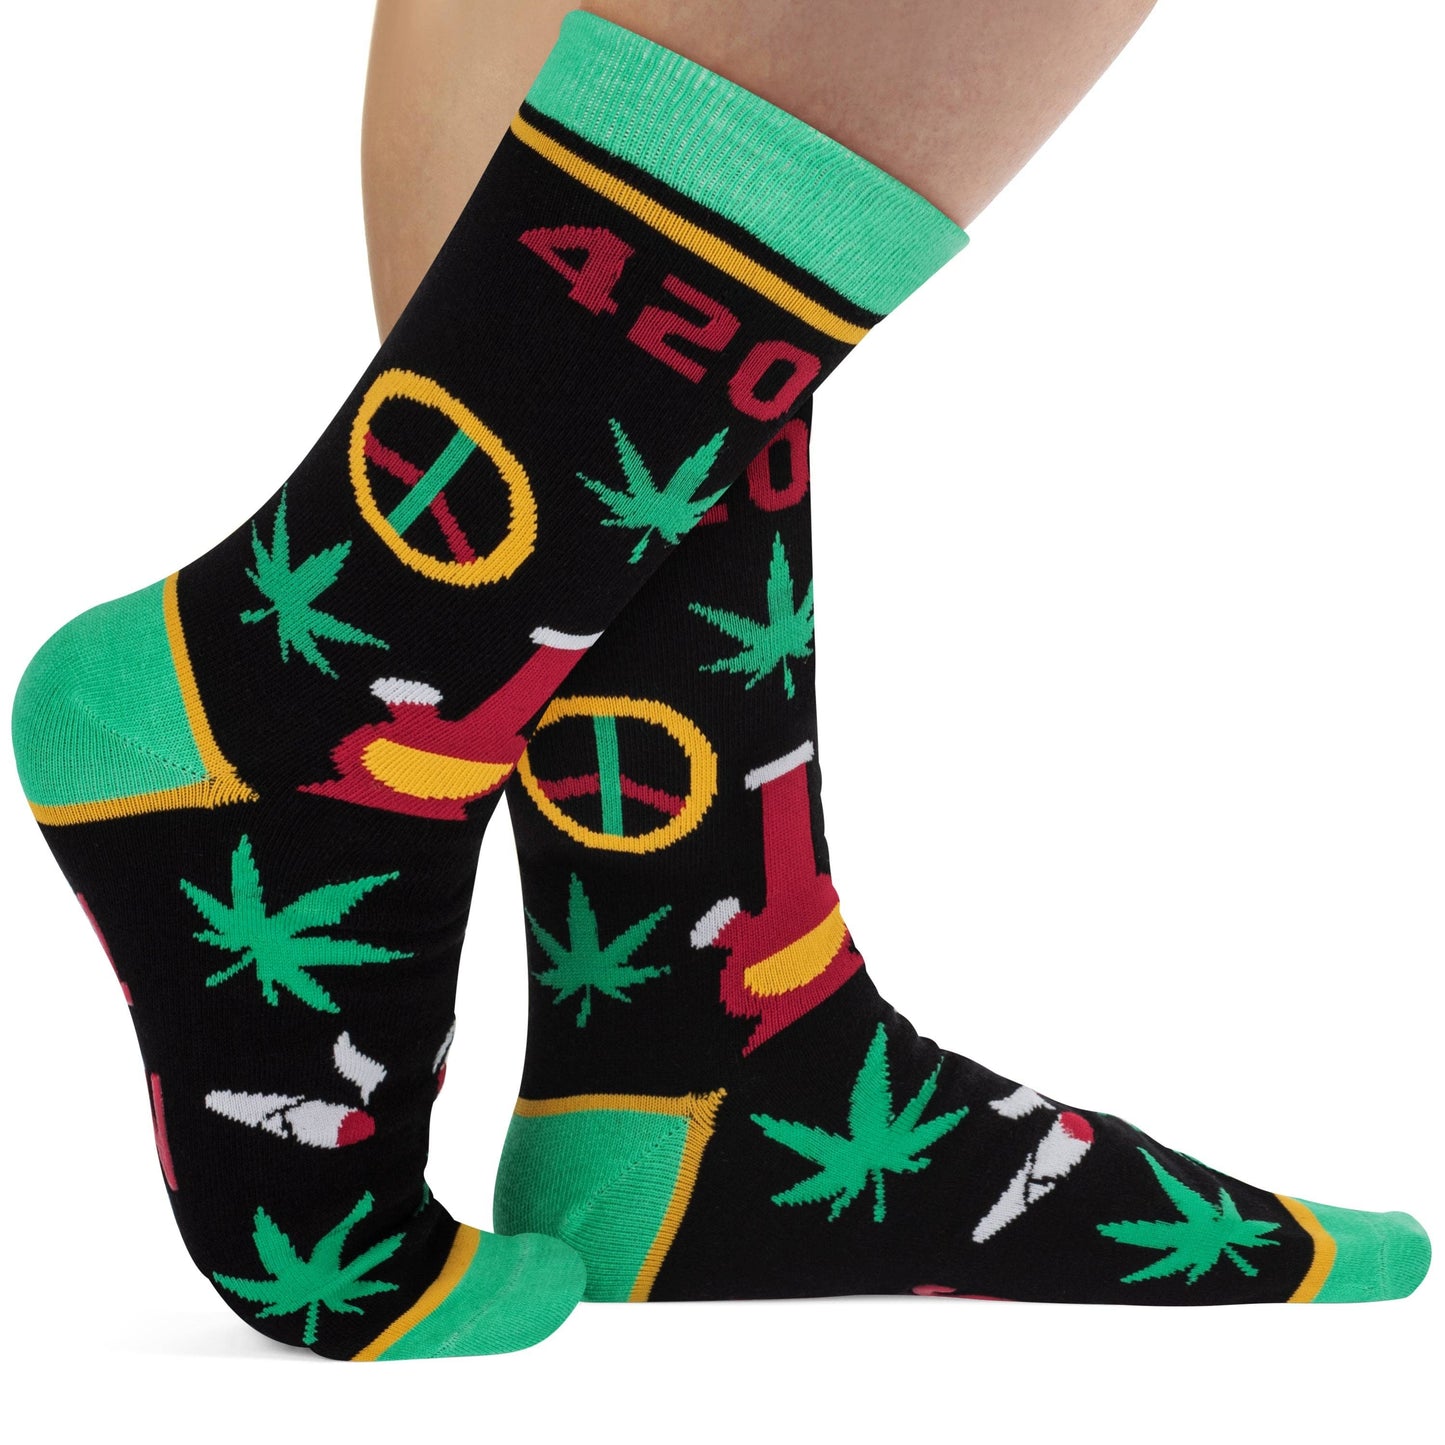 Lavley - 420 Weed Socks